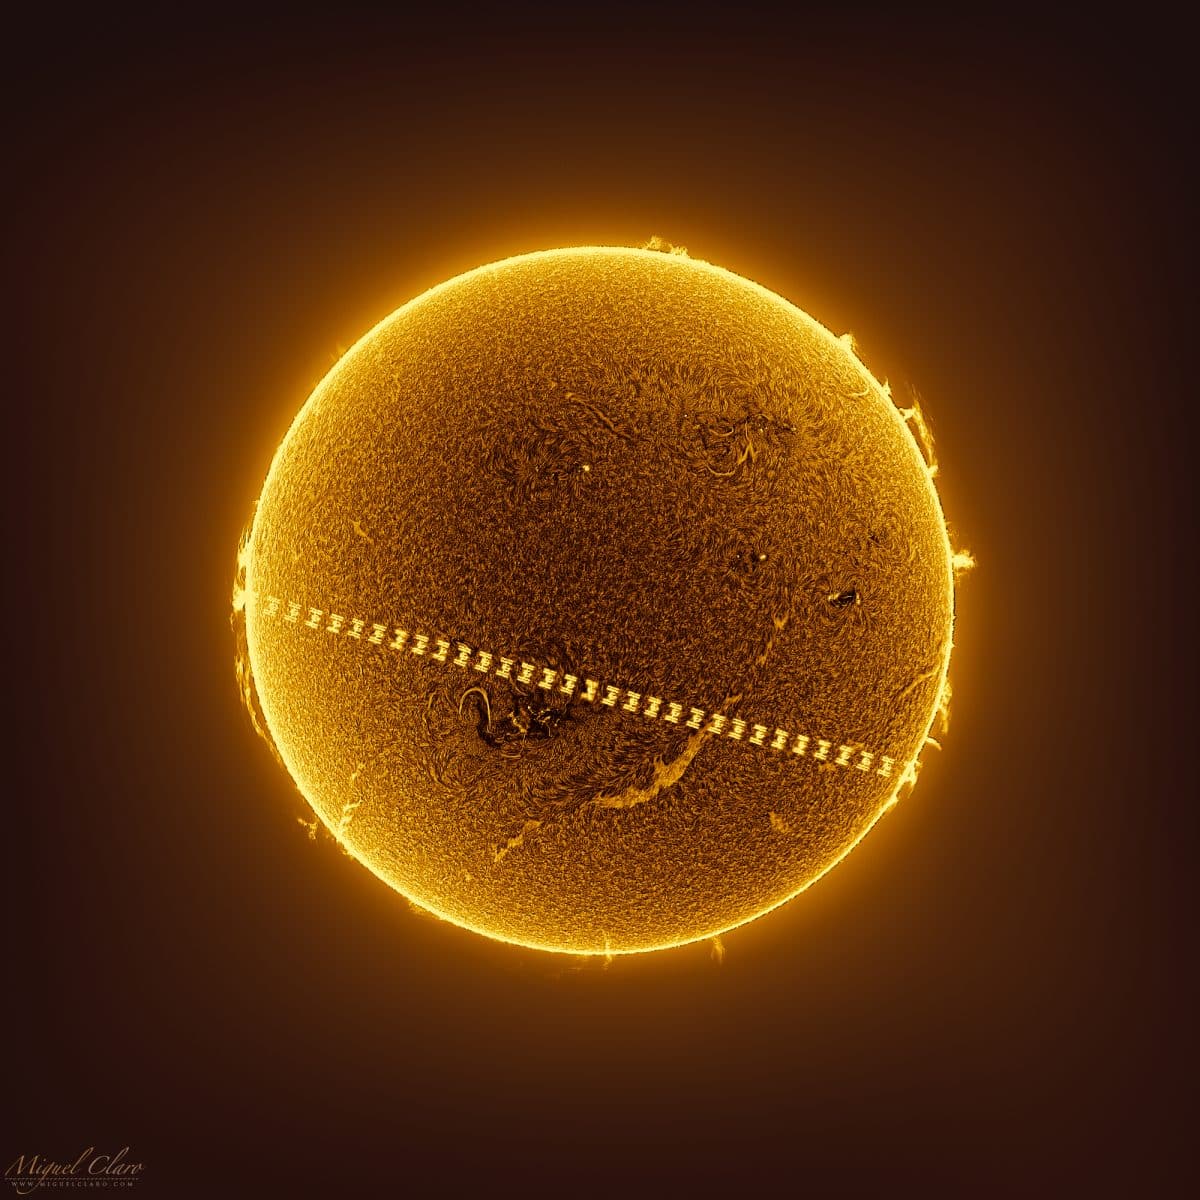 Транзит МКС на фоне солнечного диска / © Miguel Claro